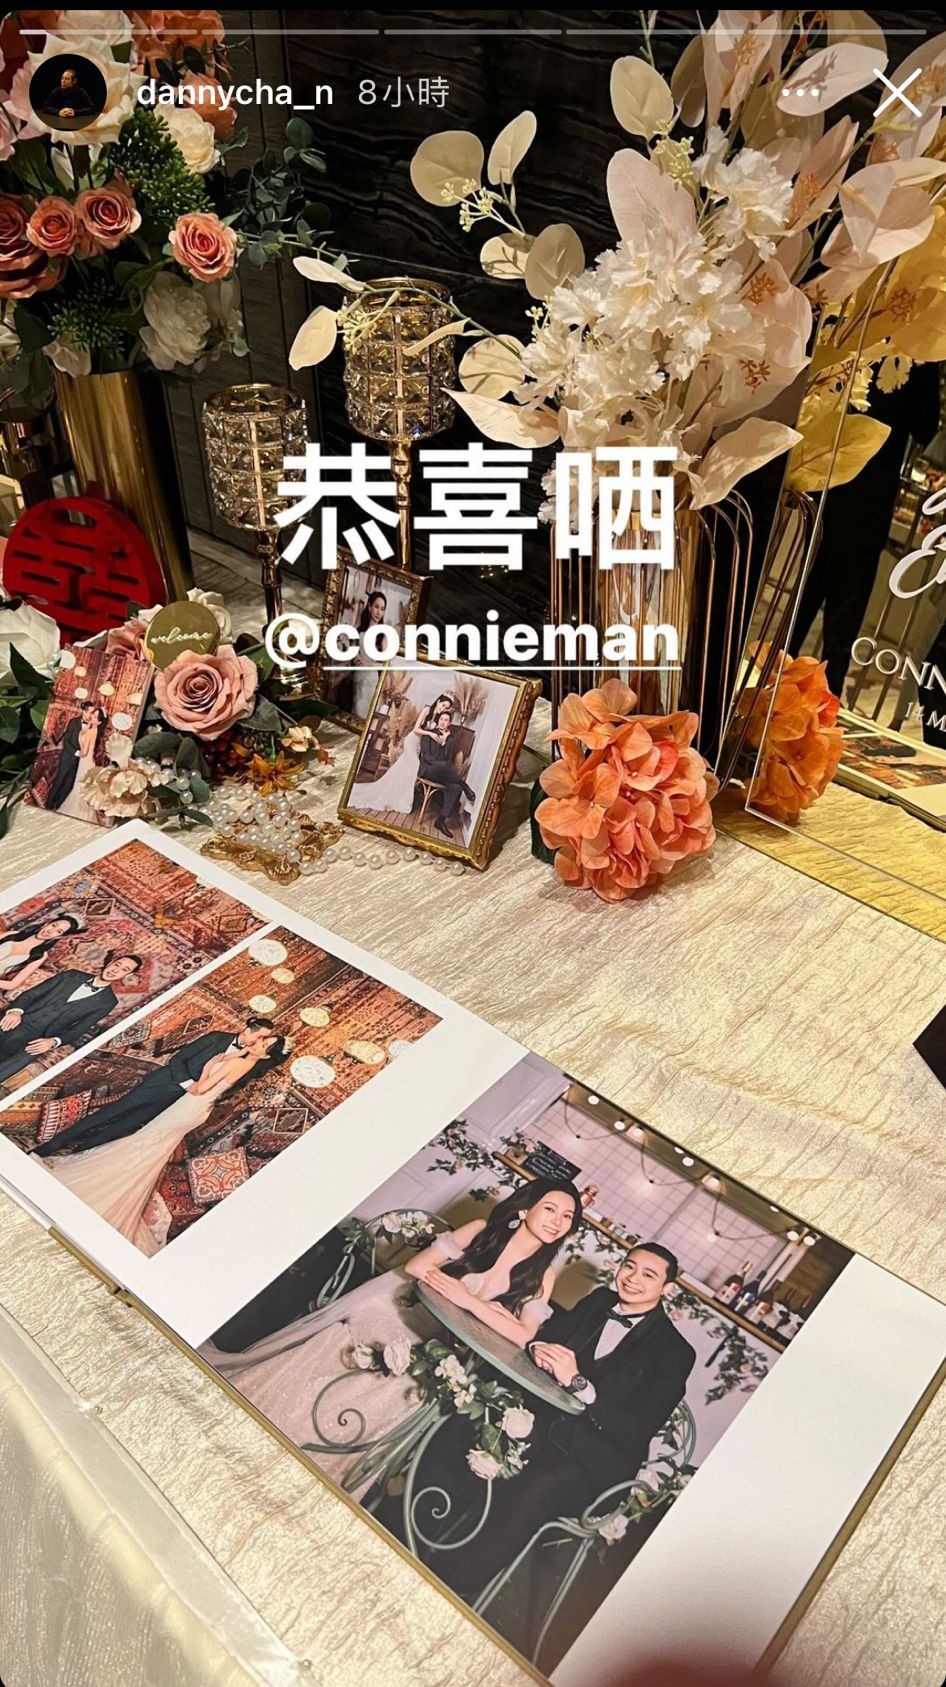 文凯玲于3月14日举行婚礼。